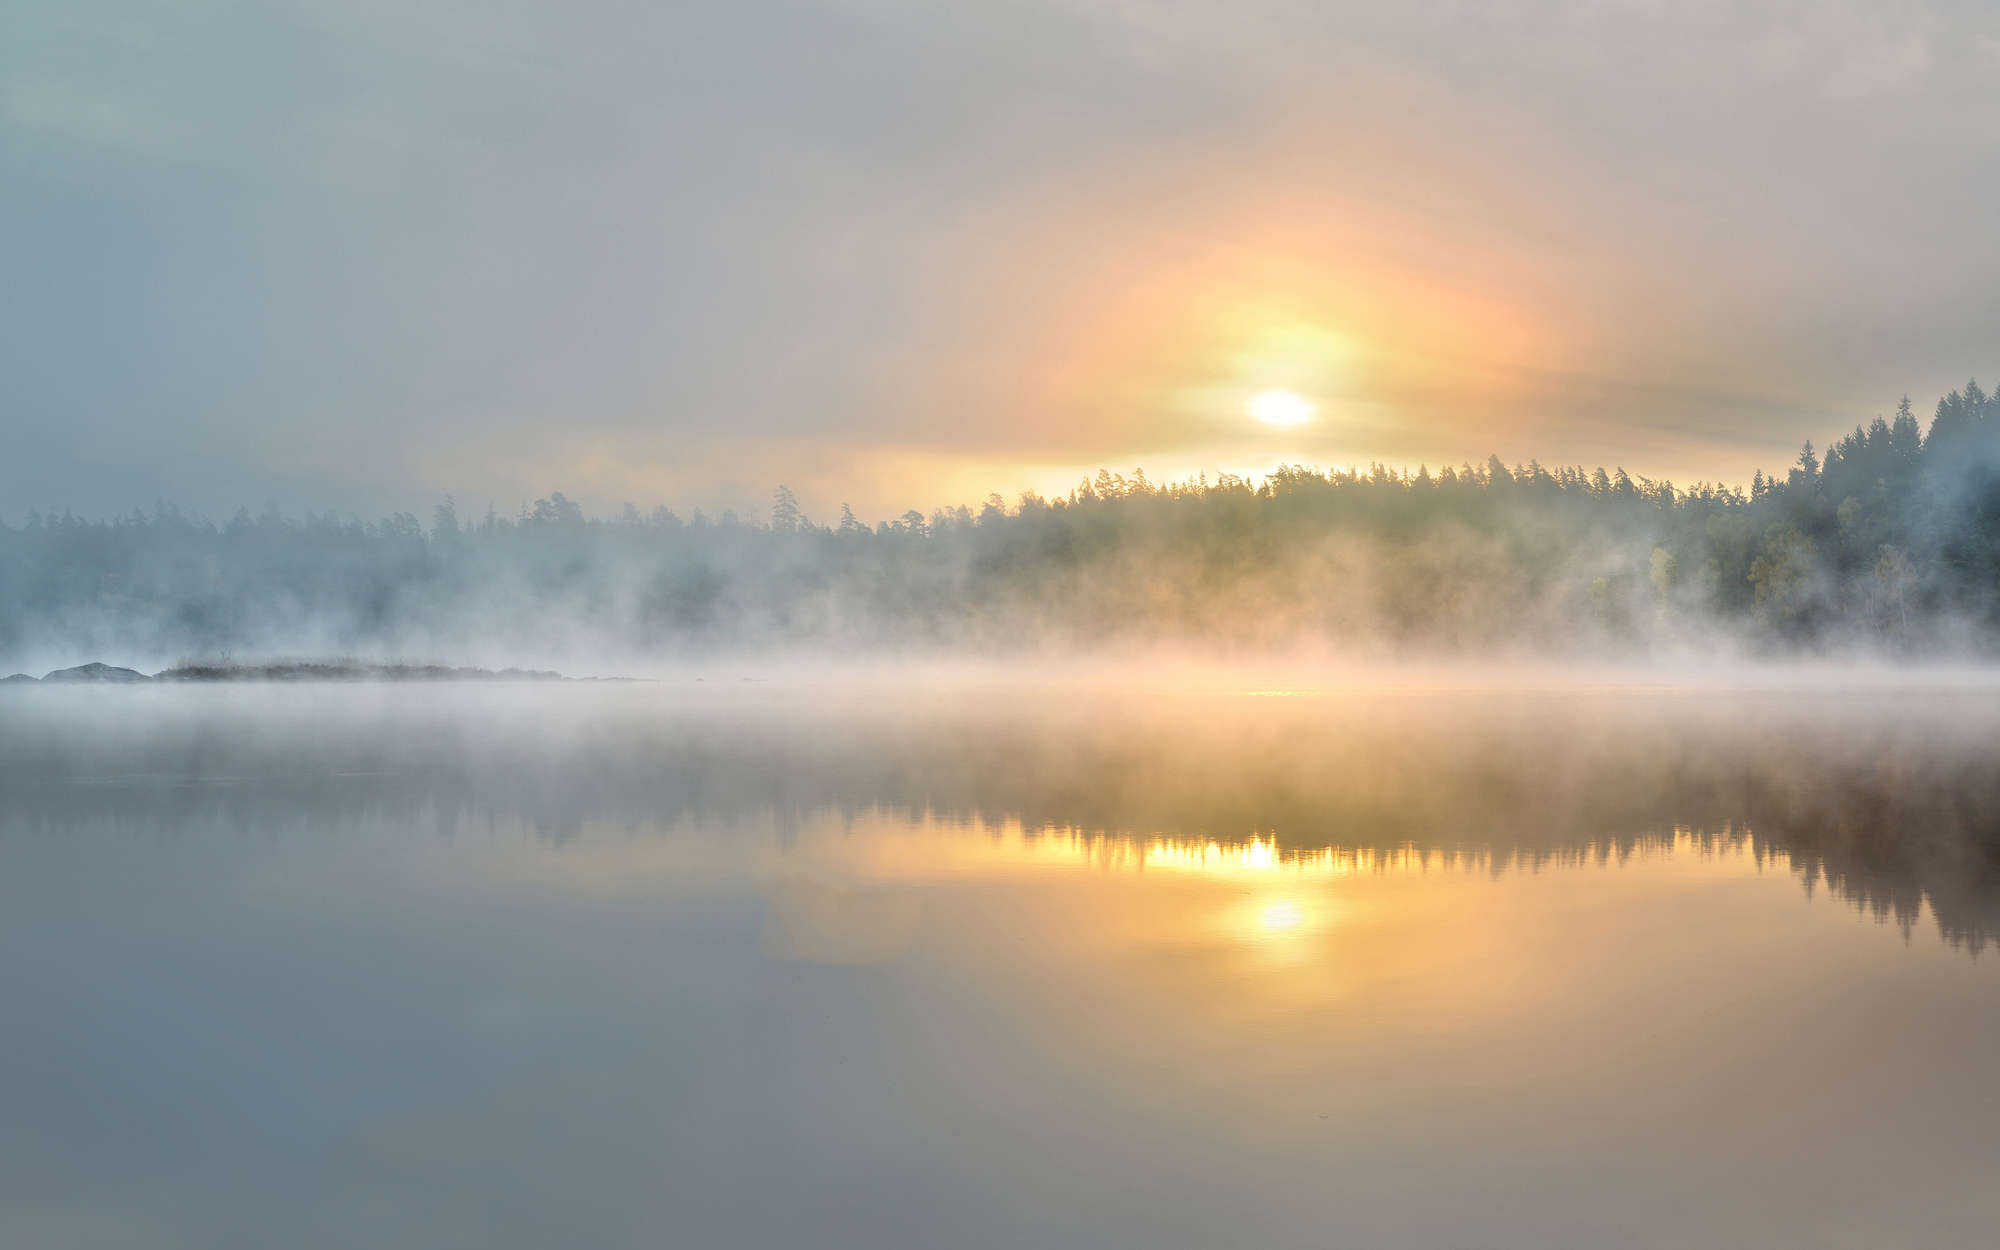             Papel pintado de la naturaleza, lago con niebla, sobre vellón liso mate
        